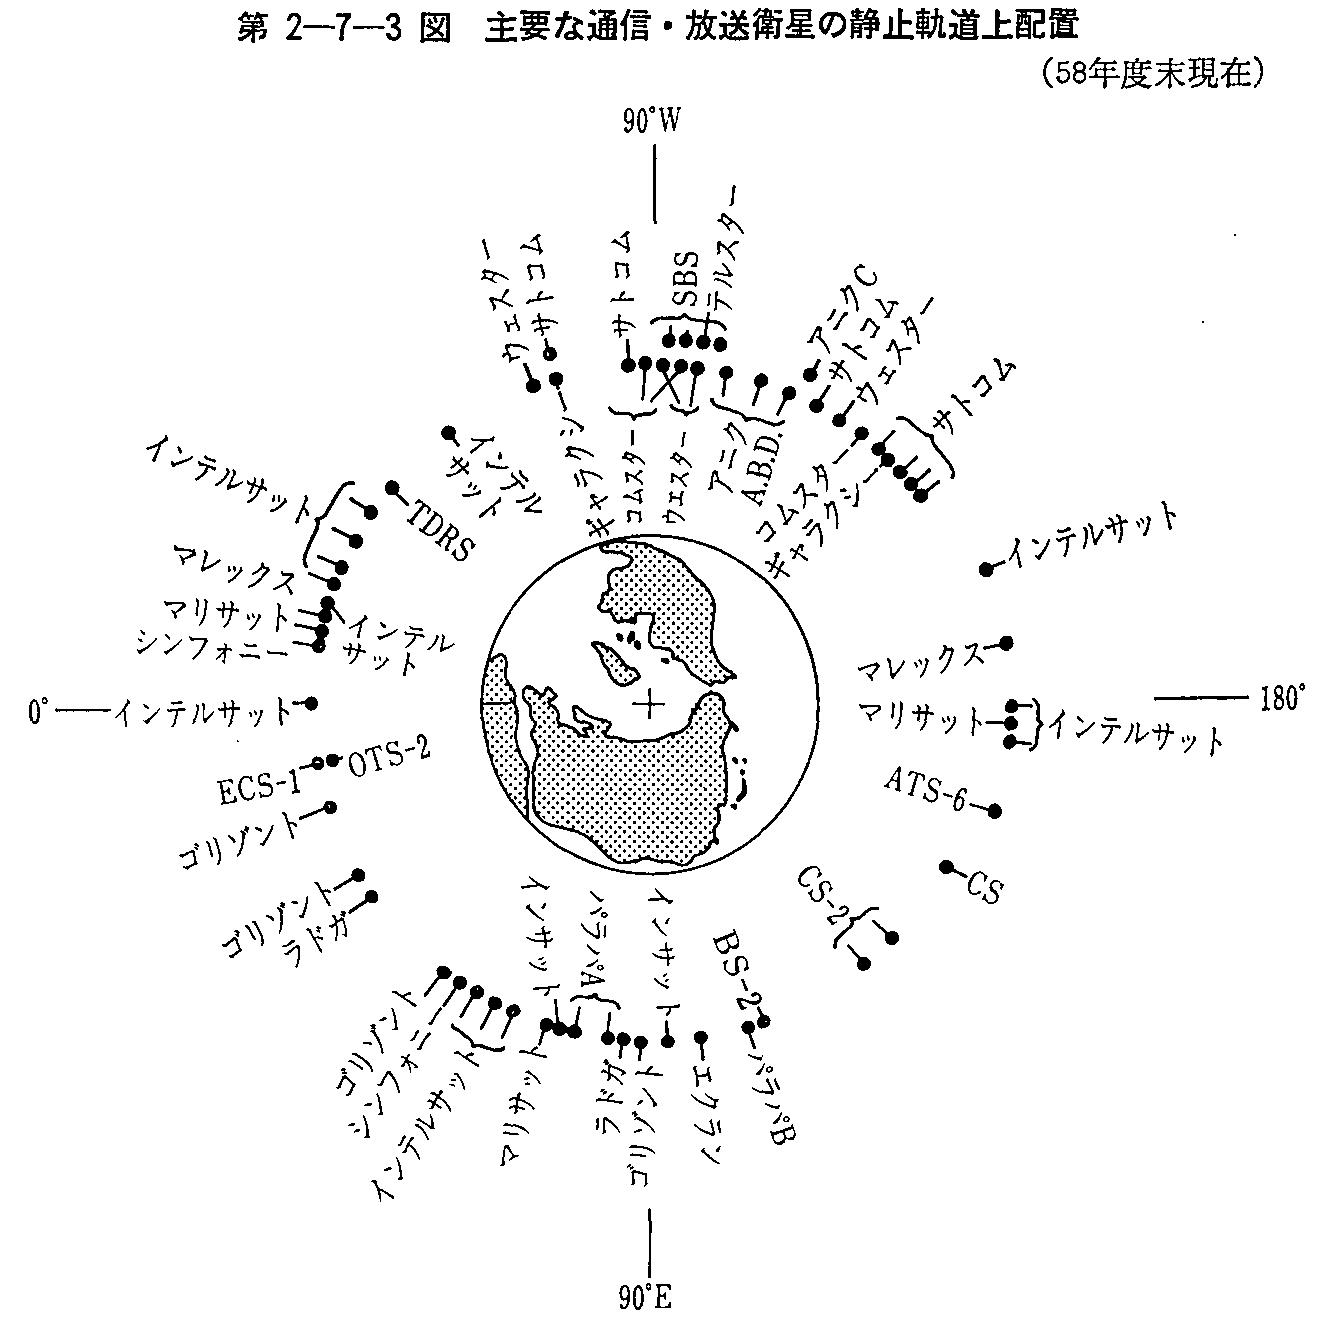 2-7-3} vȒʐMEq̐Î~Ozu(58Nx)